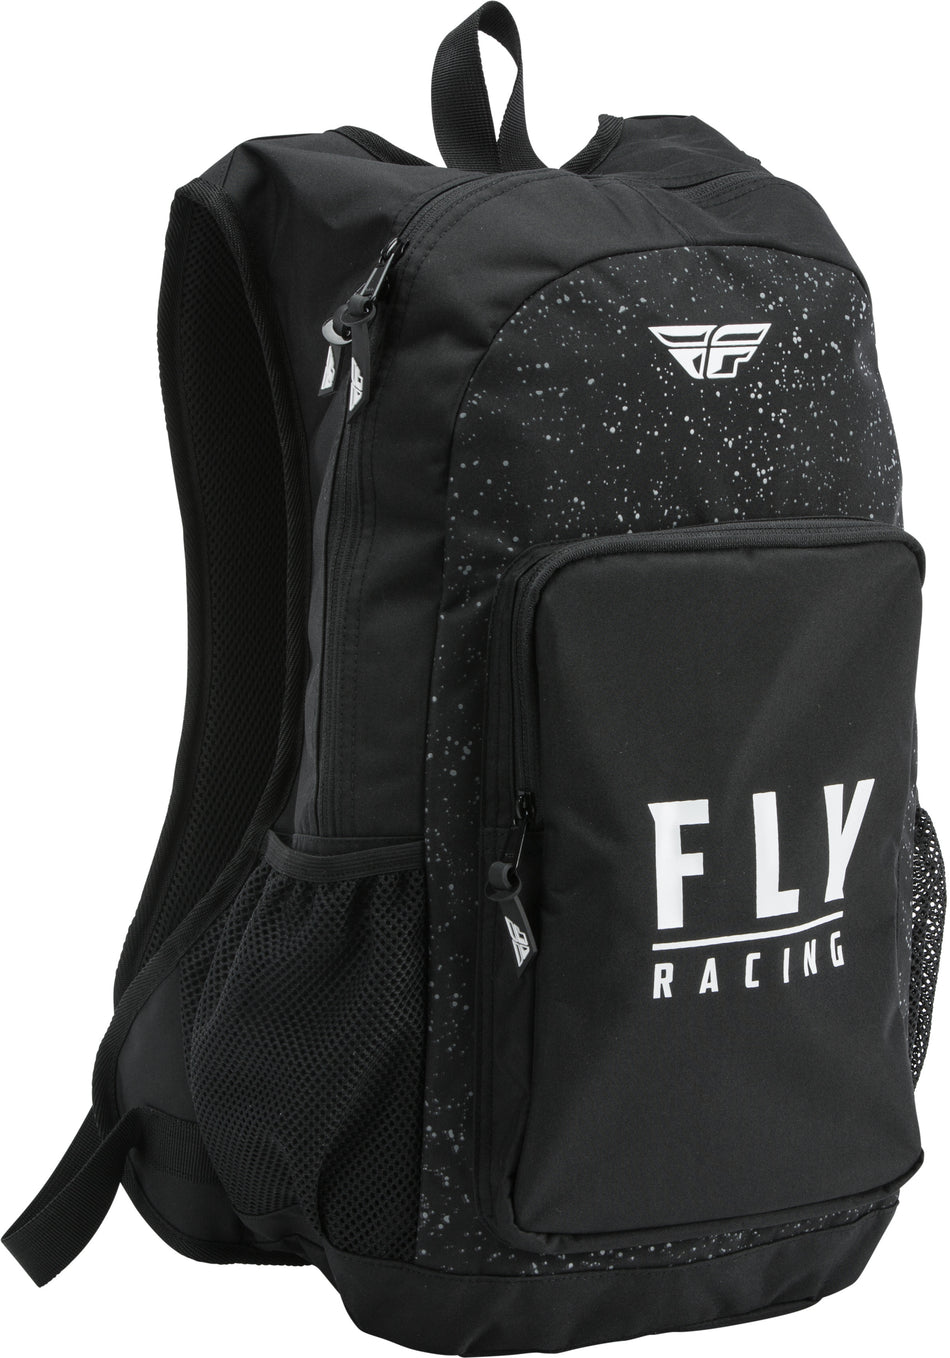 FLY RACING Jump Pack Backpack Black/White Splatter 28-5206